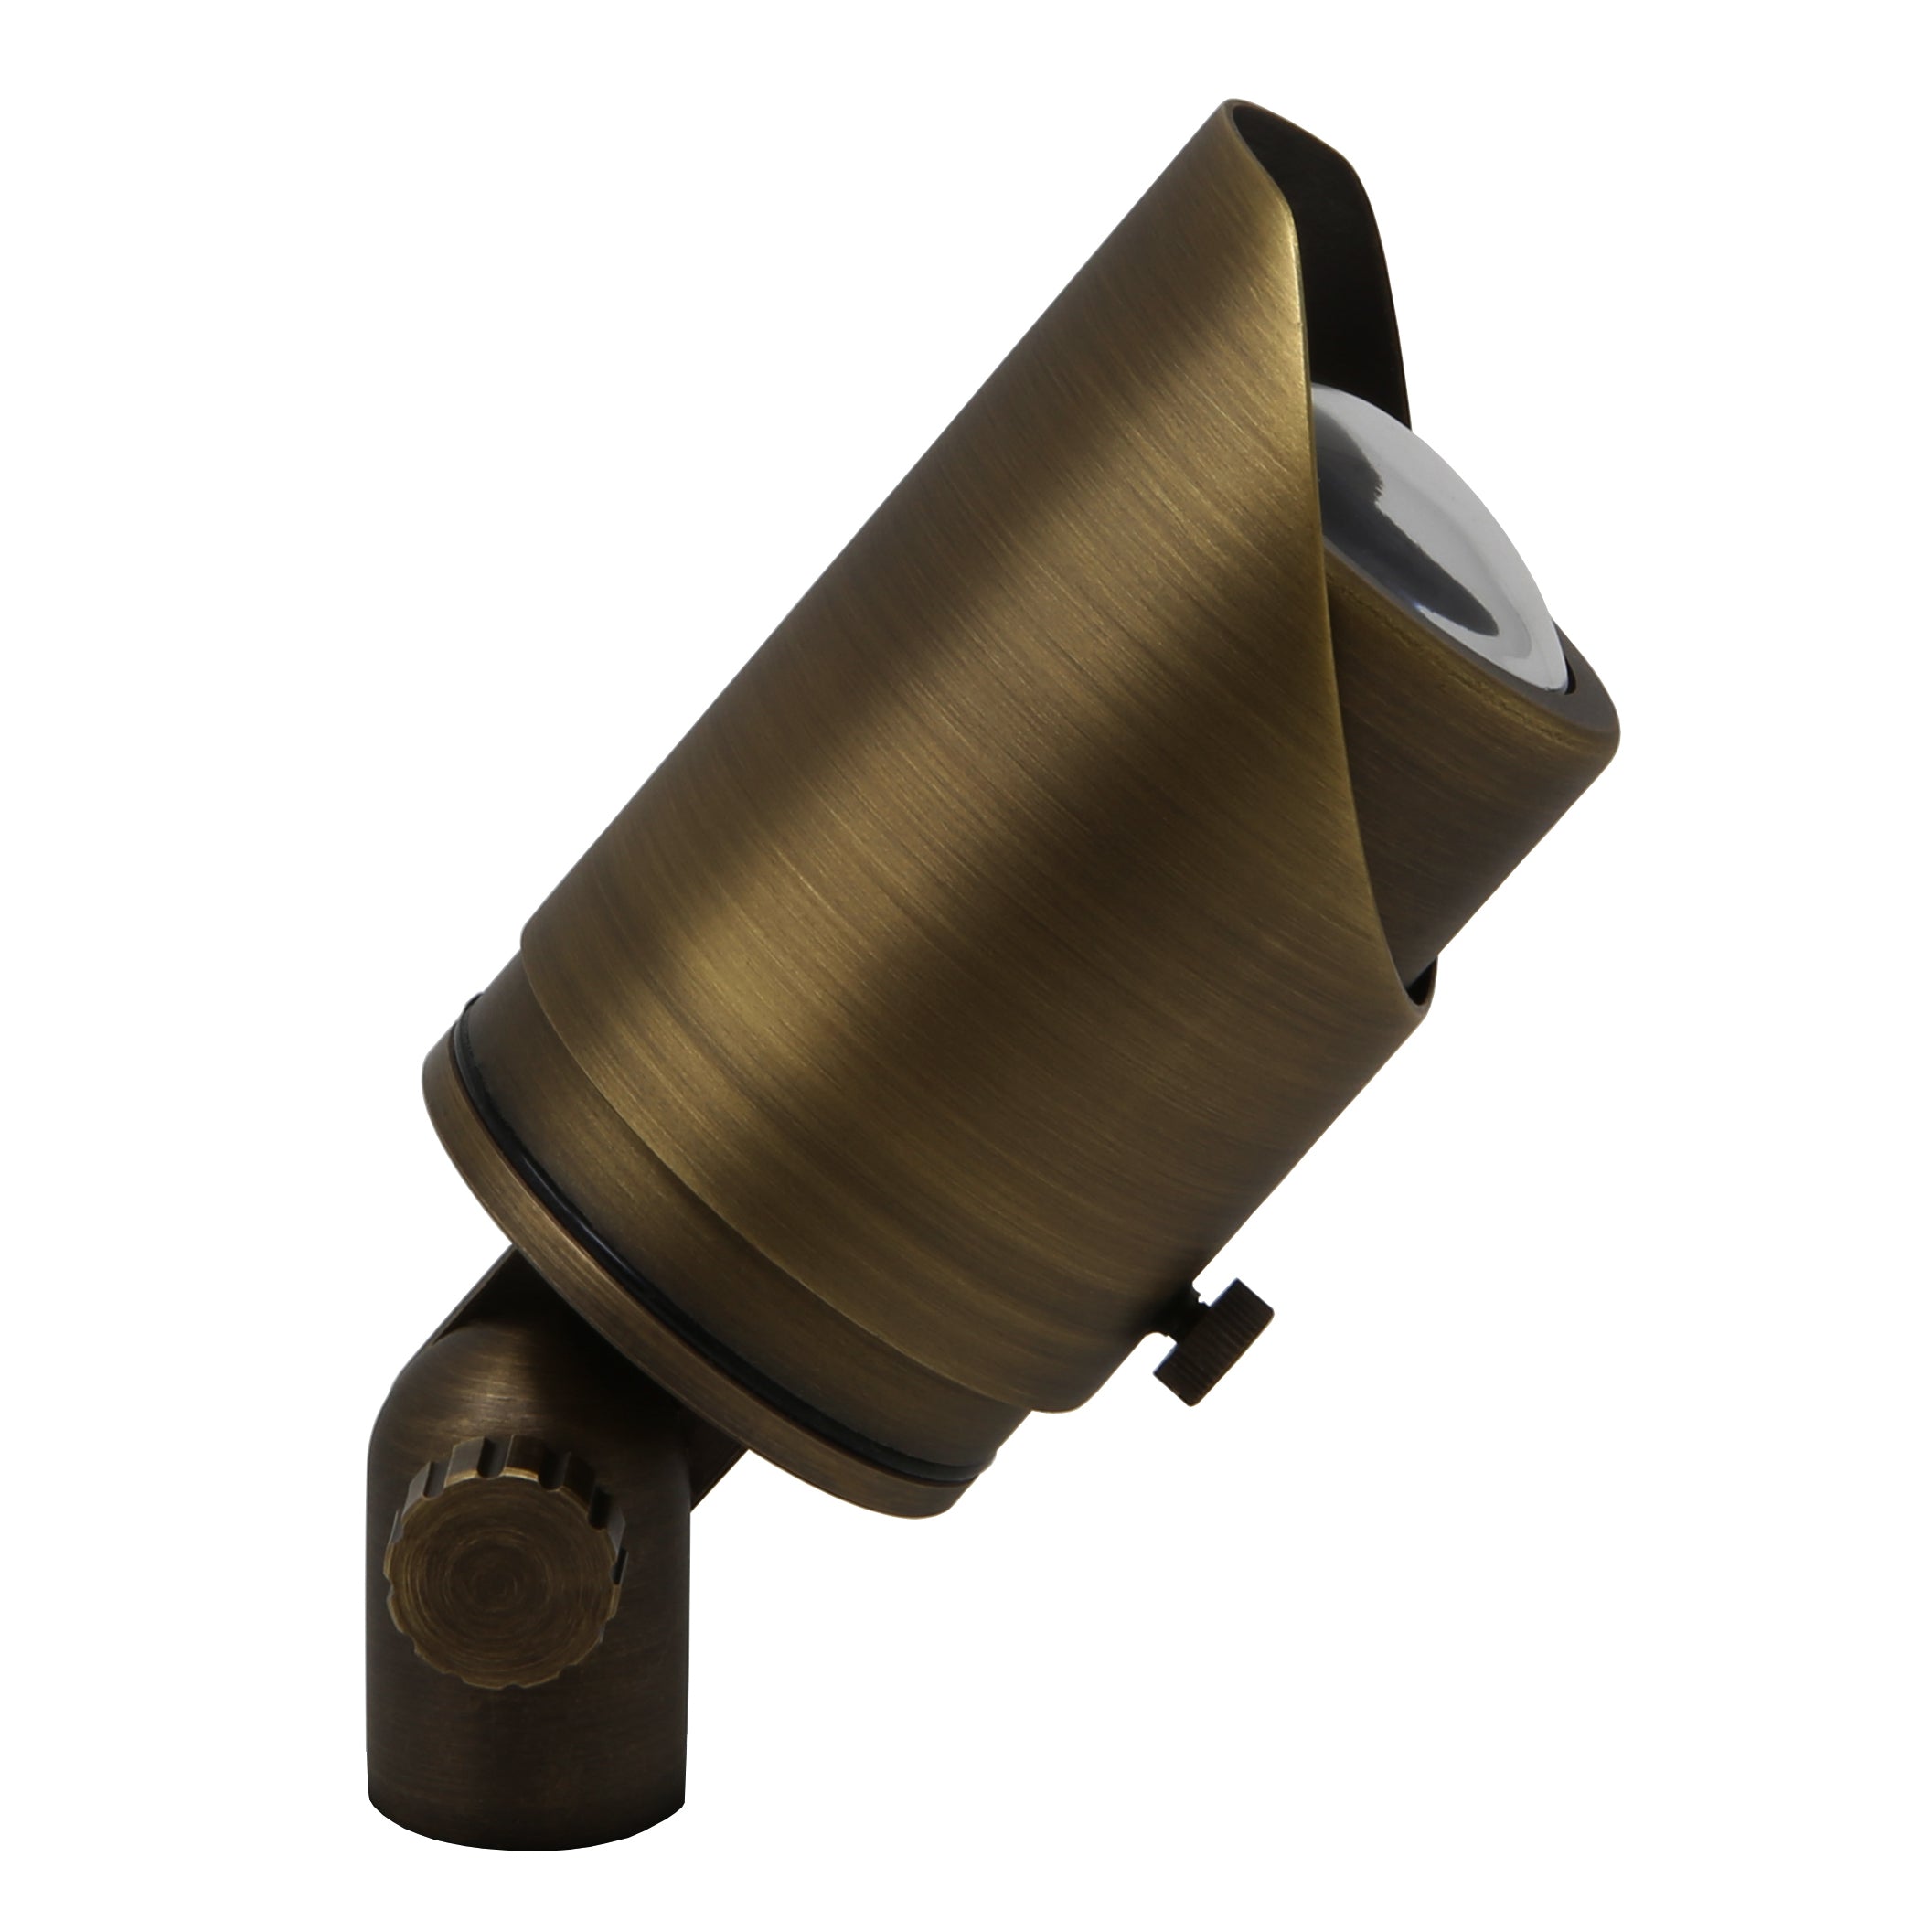 Adjustable Focus Spotlight for Low Voltage Landscape Lighting [Brass]